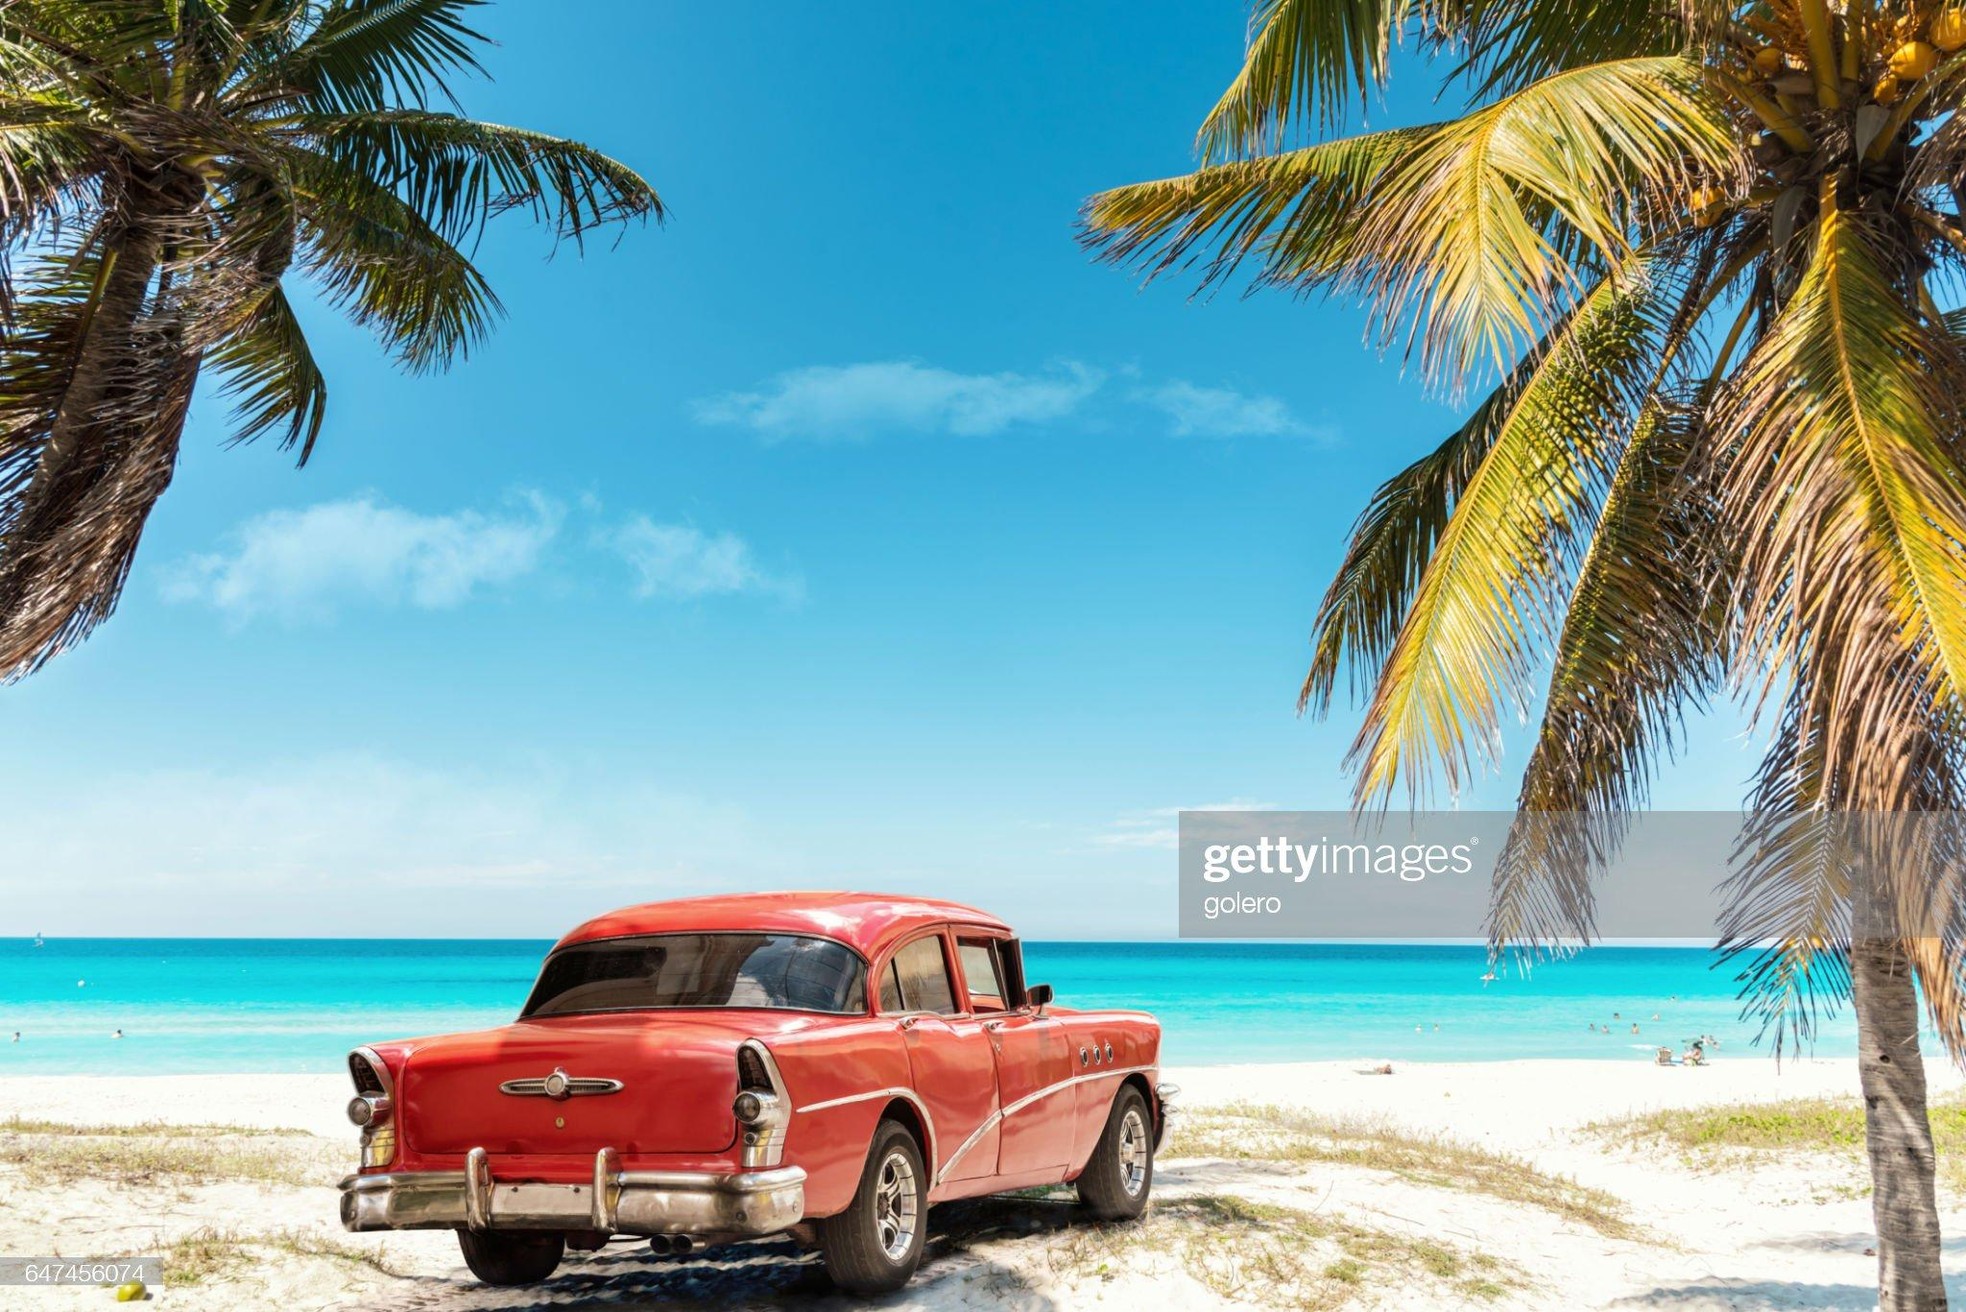 Những bãi biển đẹp nhất thế giới, được ví như thiên đường ở Cuba - Ảnh 5.